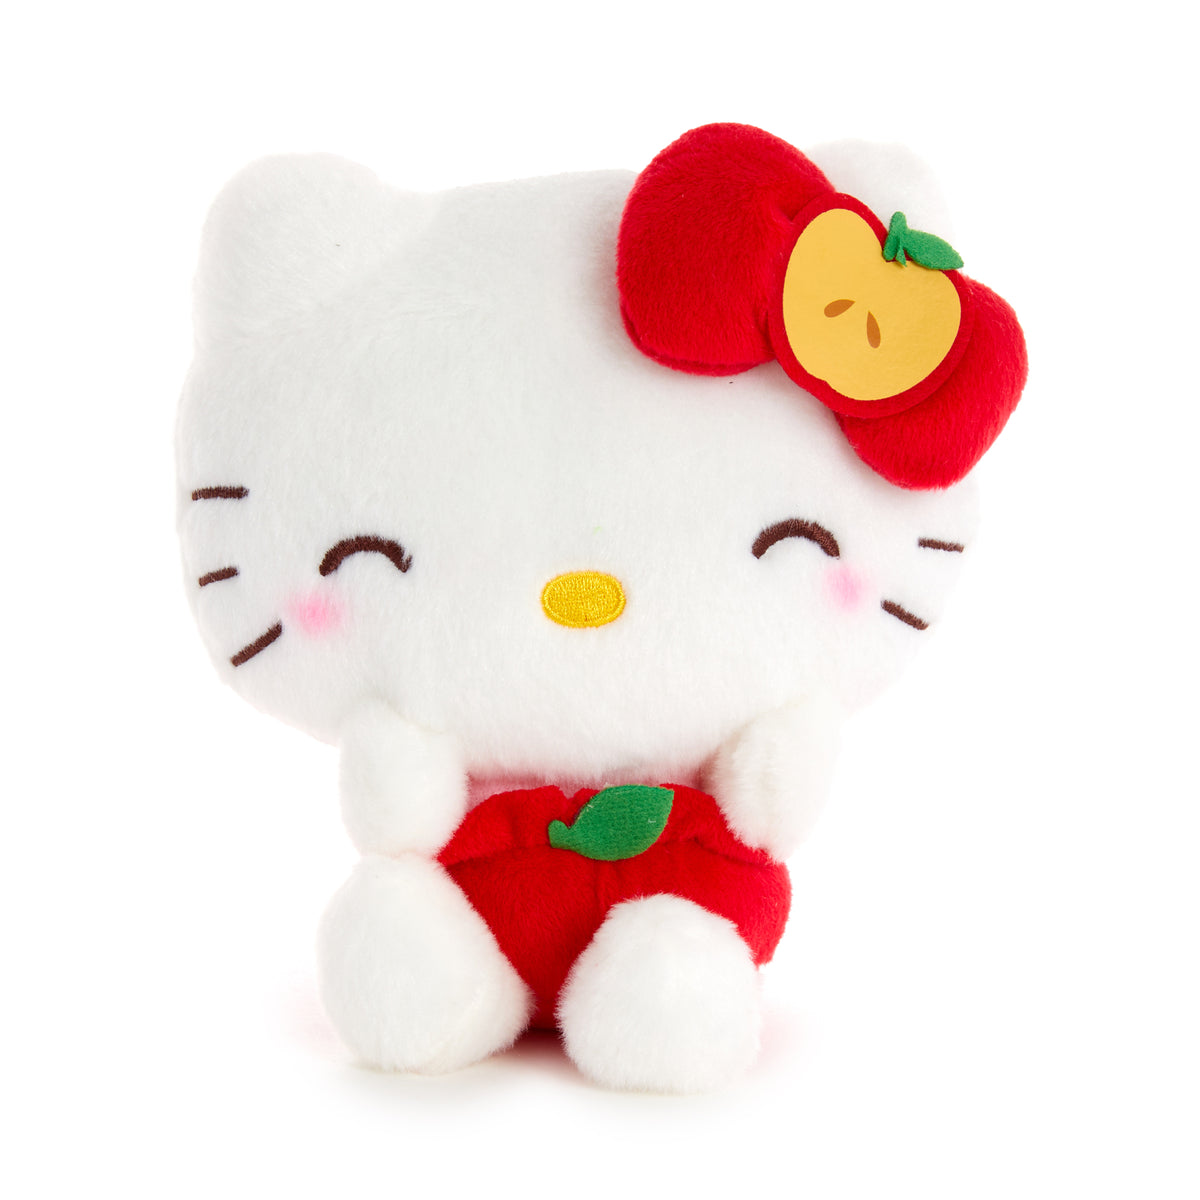 Sanrio Hello Kitty Keroppi 6 Plush